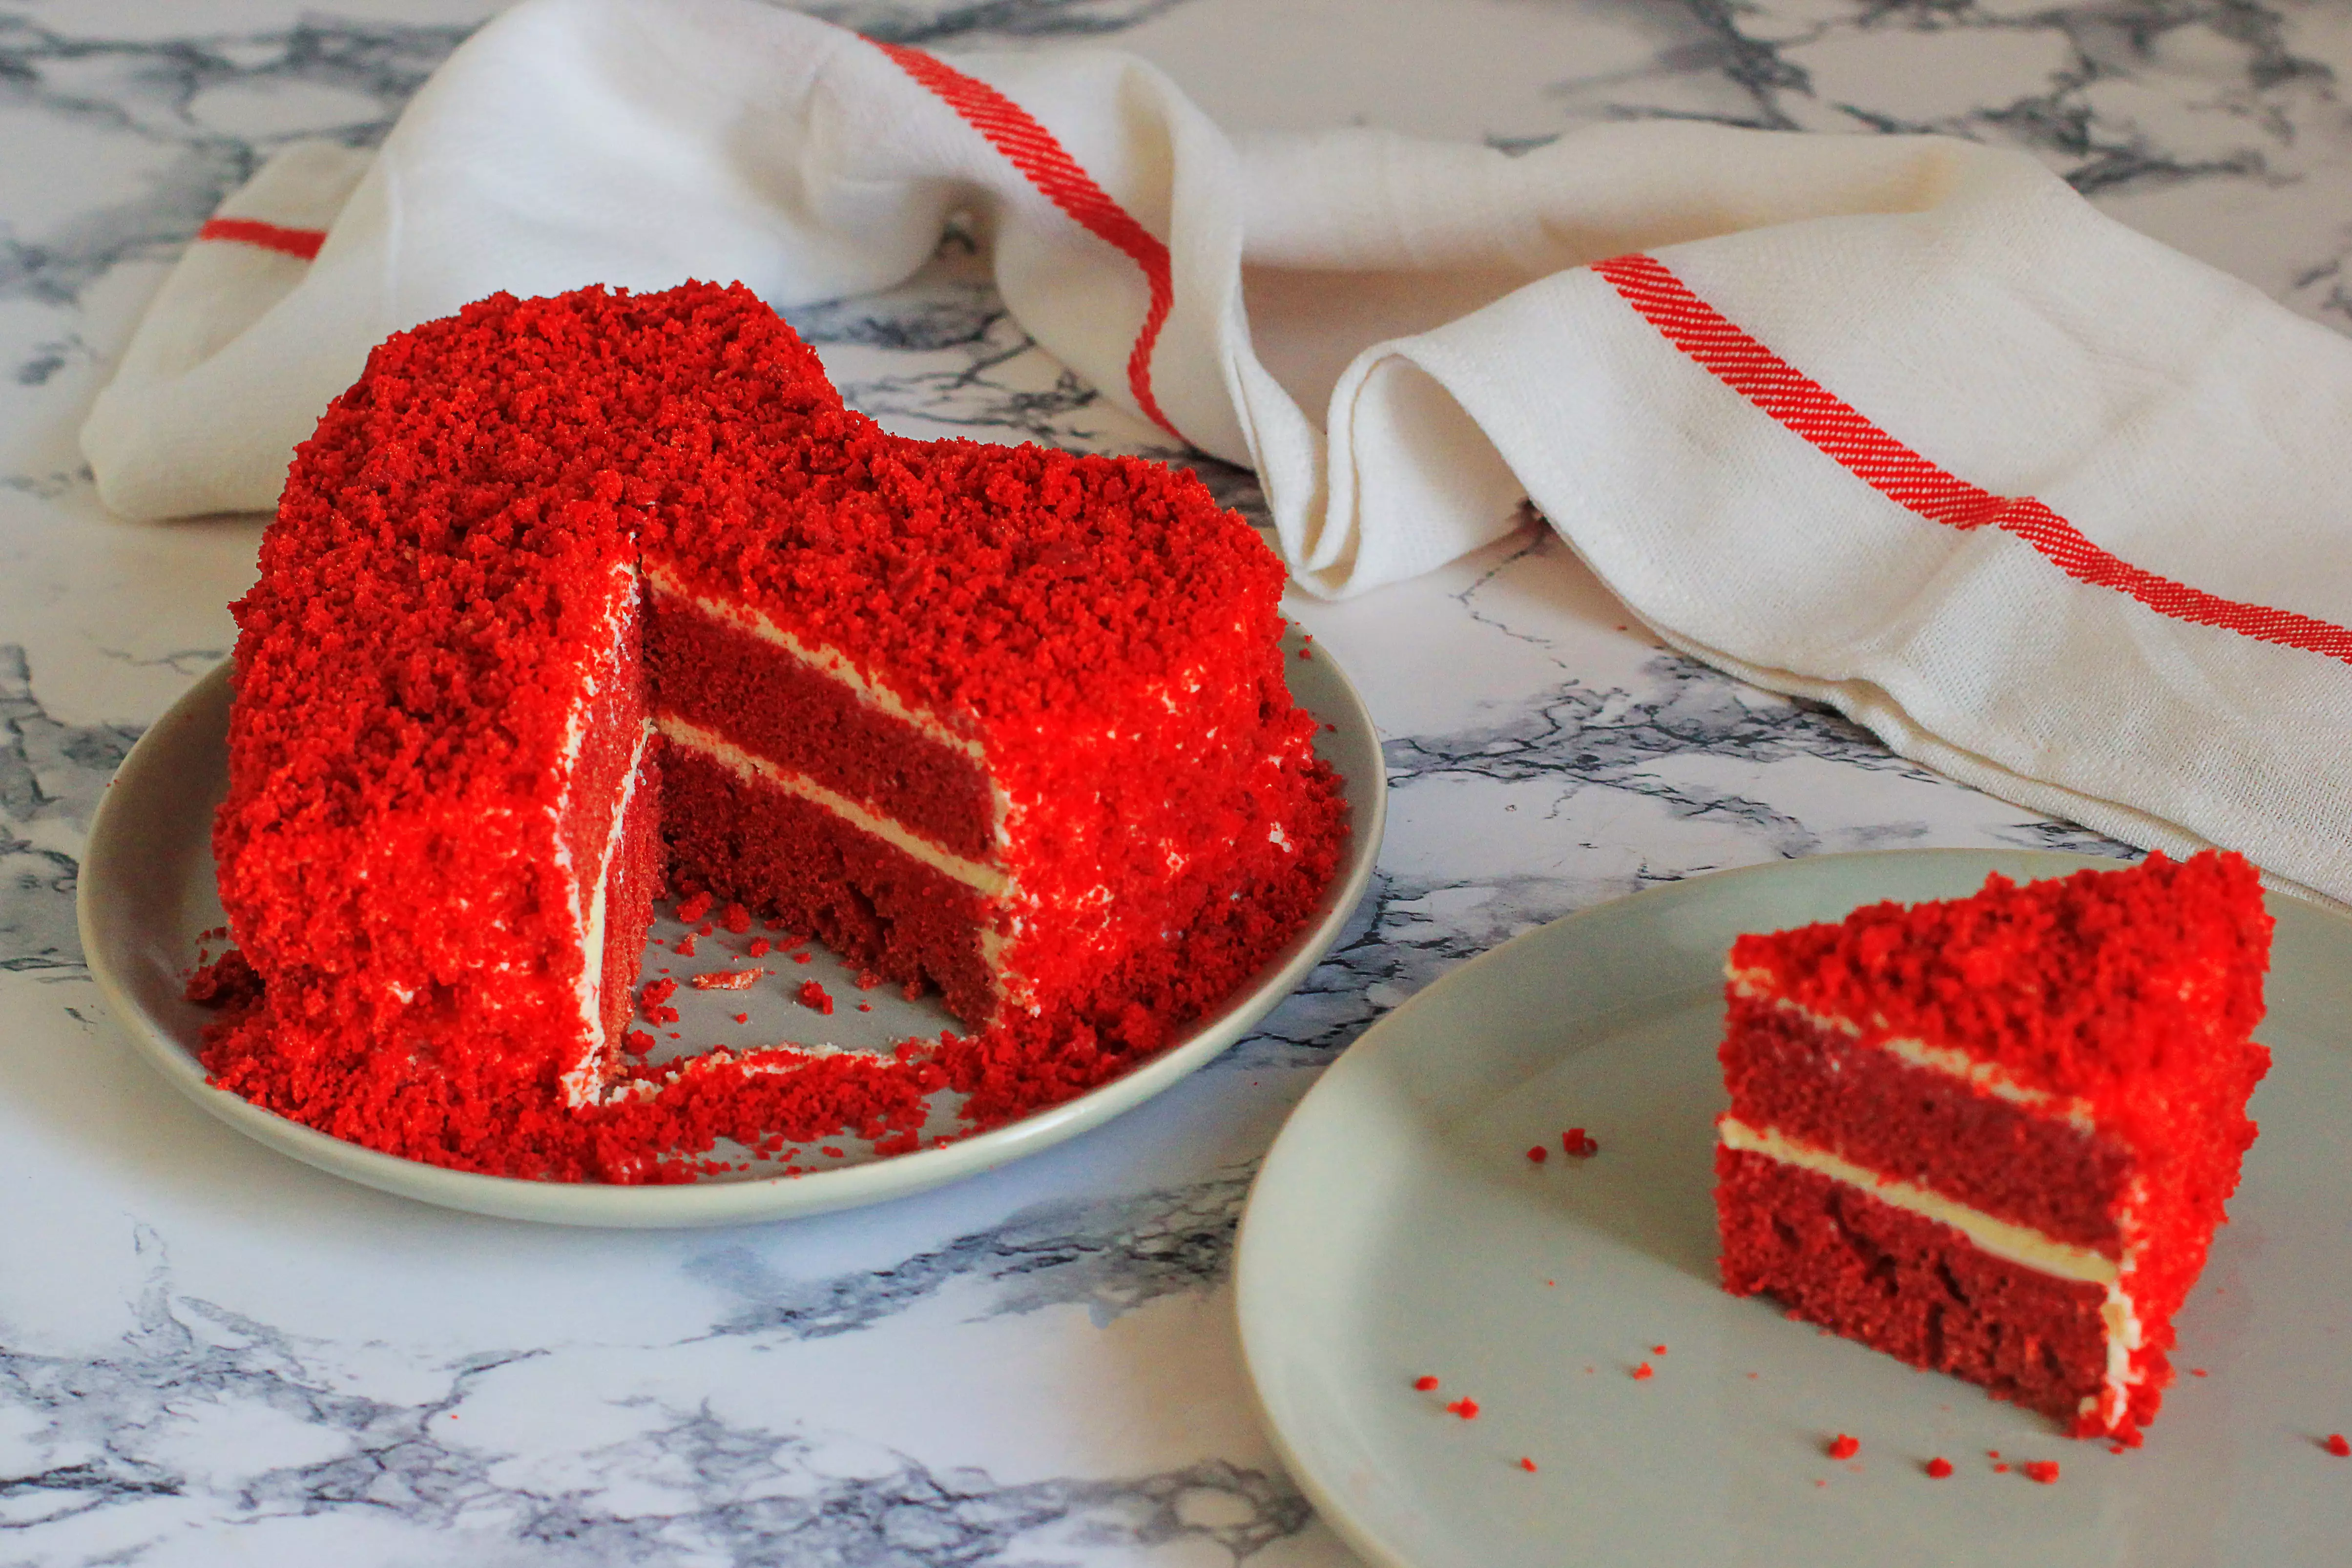 Торт "Червоний оксамит" ідеальний для чуттєвих Раків